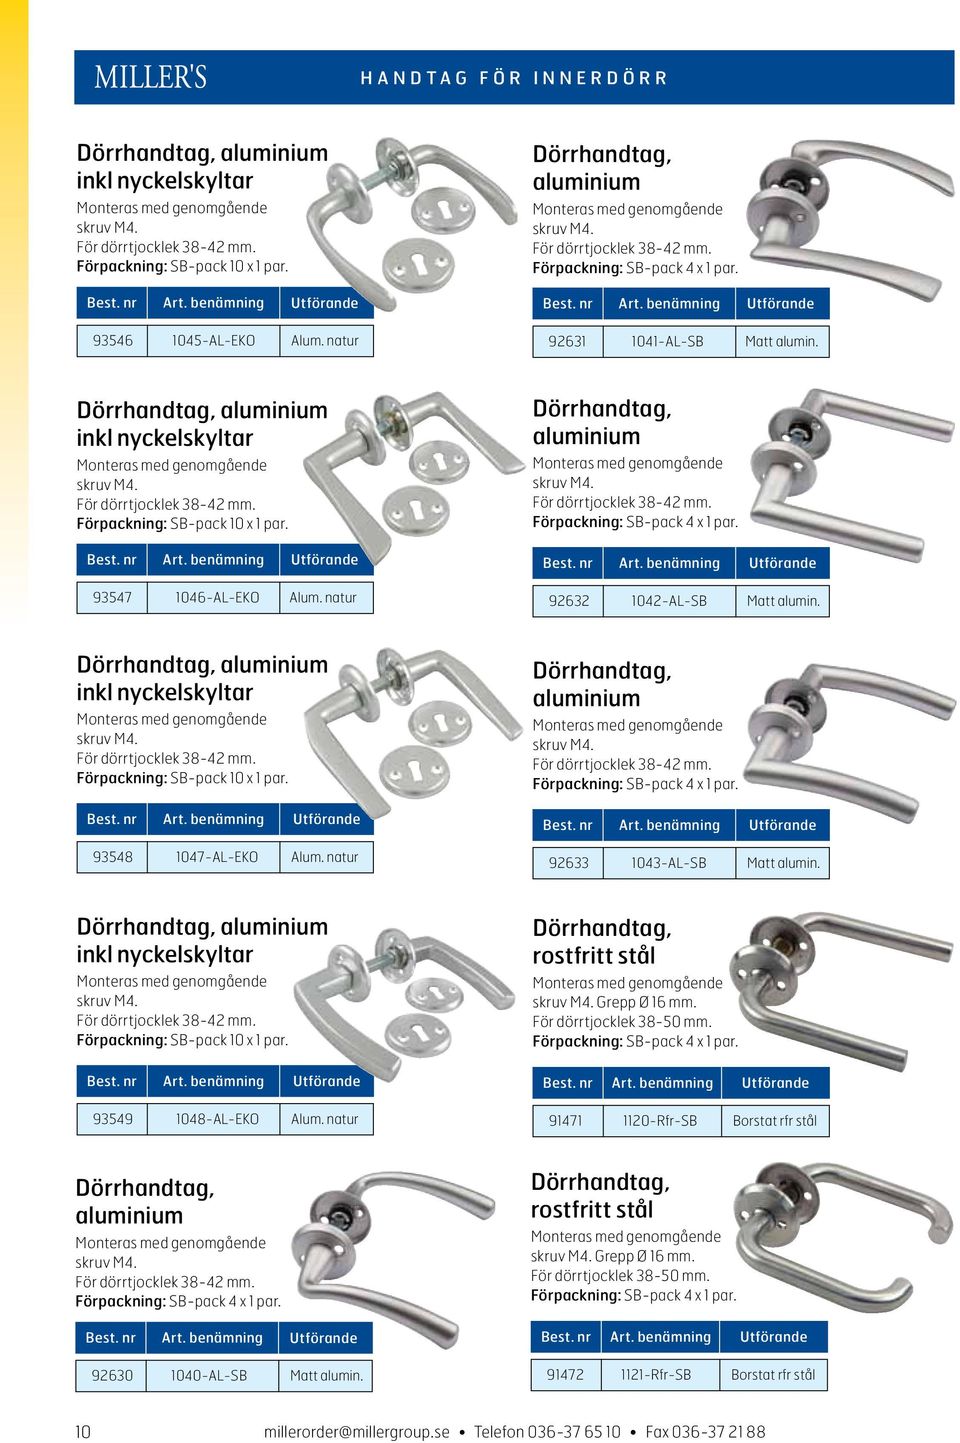 Dörrhandtag, aluminium inkl nyckelskyltar Monteras med genomgående skruv M4. För dörrtjocklek 38-42 mm. Förpackning: SB-pack 10 x 1 par. 93547 1046-AL-EKO Alum.